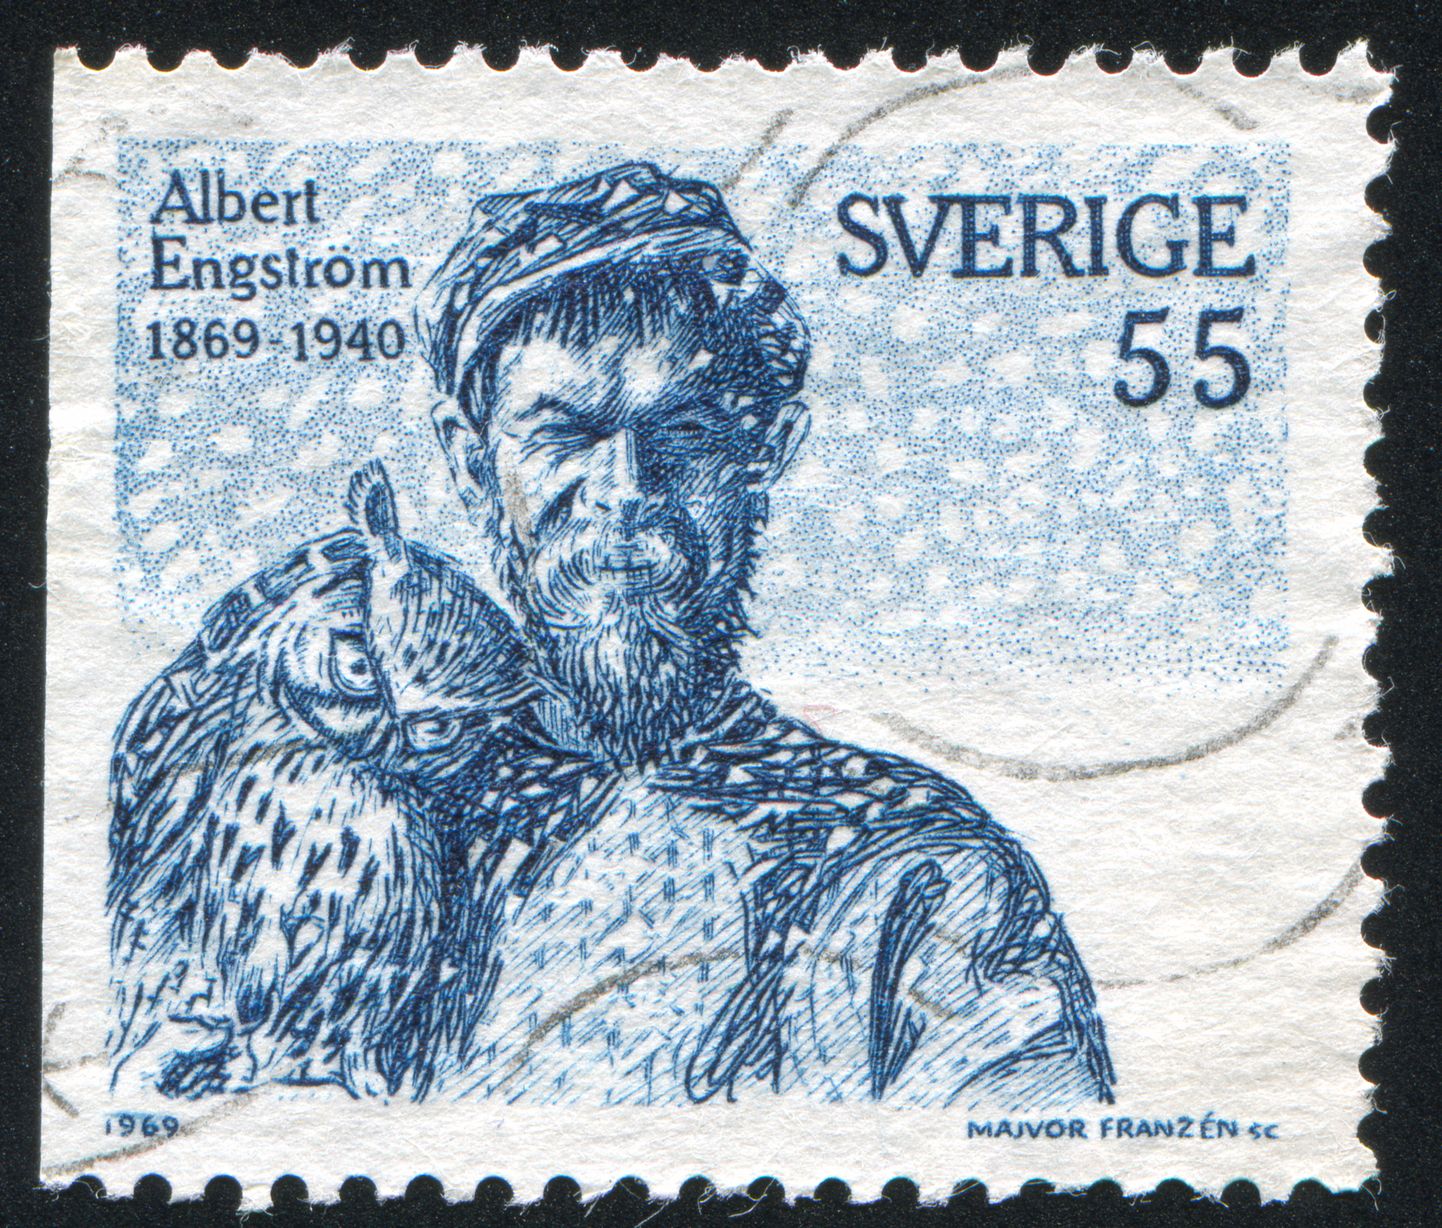 Albert Engström postmargil.